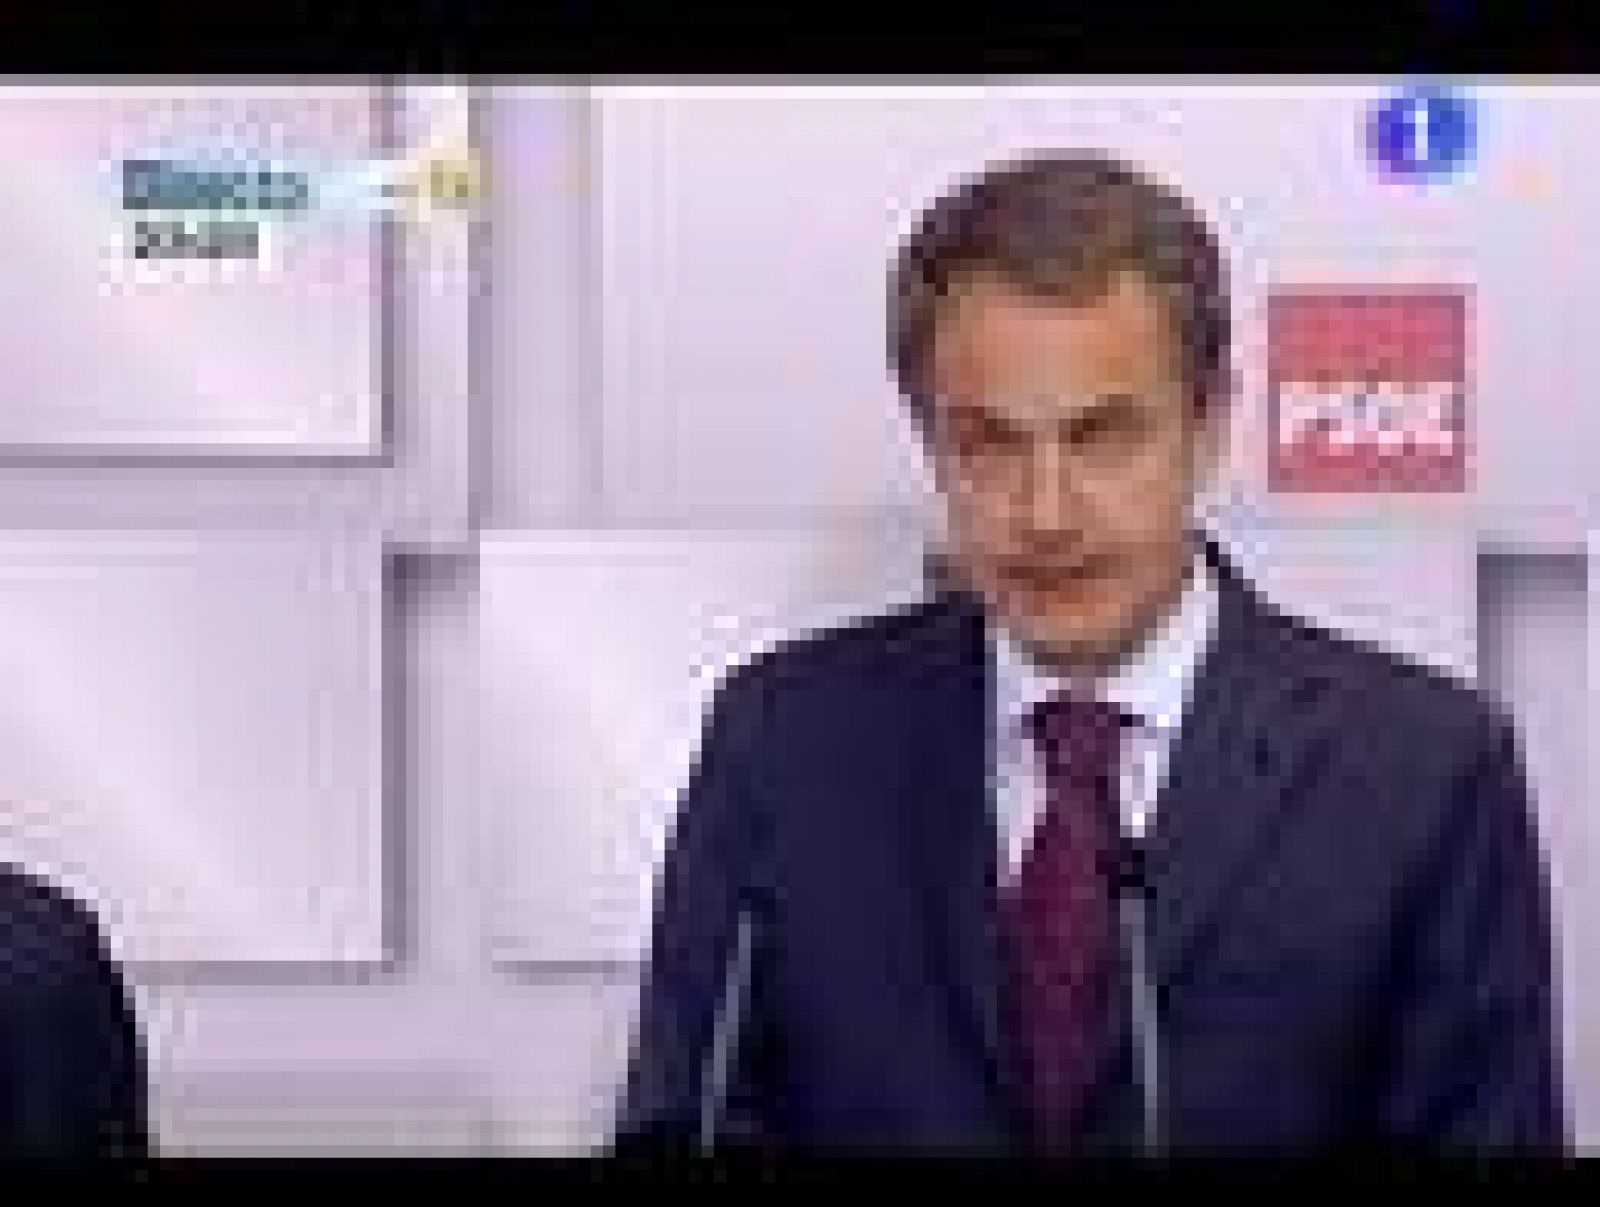  Zapatero reconoce el "retroceso amplio"  del PSOE y descarta el adelanto electoral